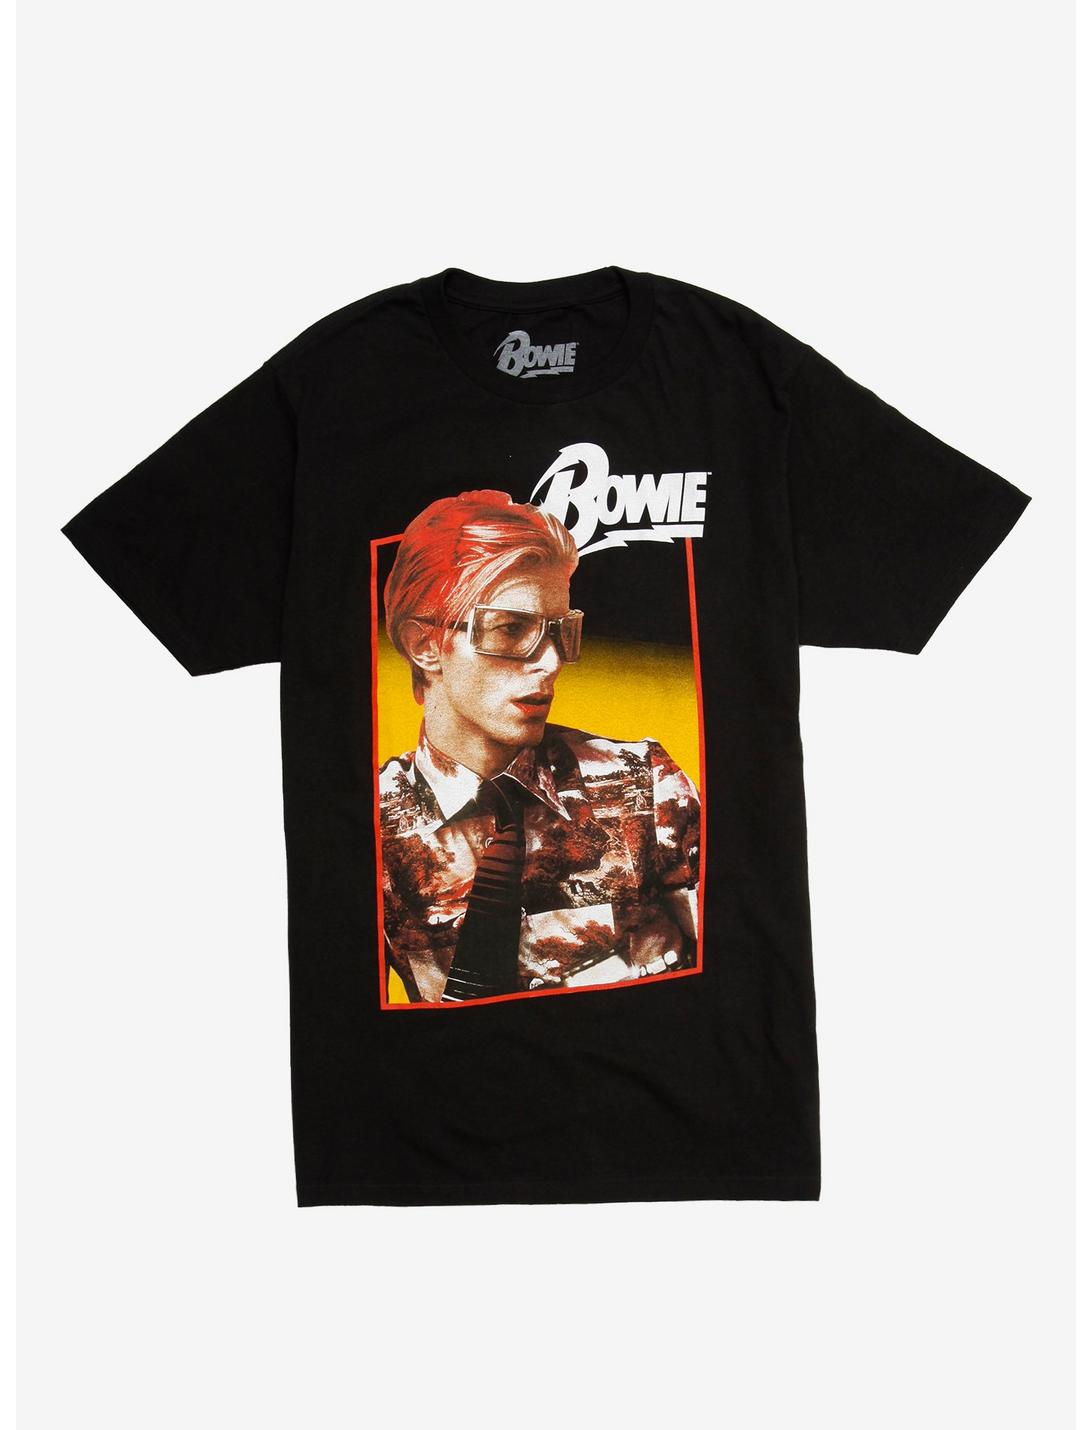 David Bowie 70s Style Portrait T-Shirt, BLACK, hi-res